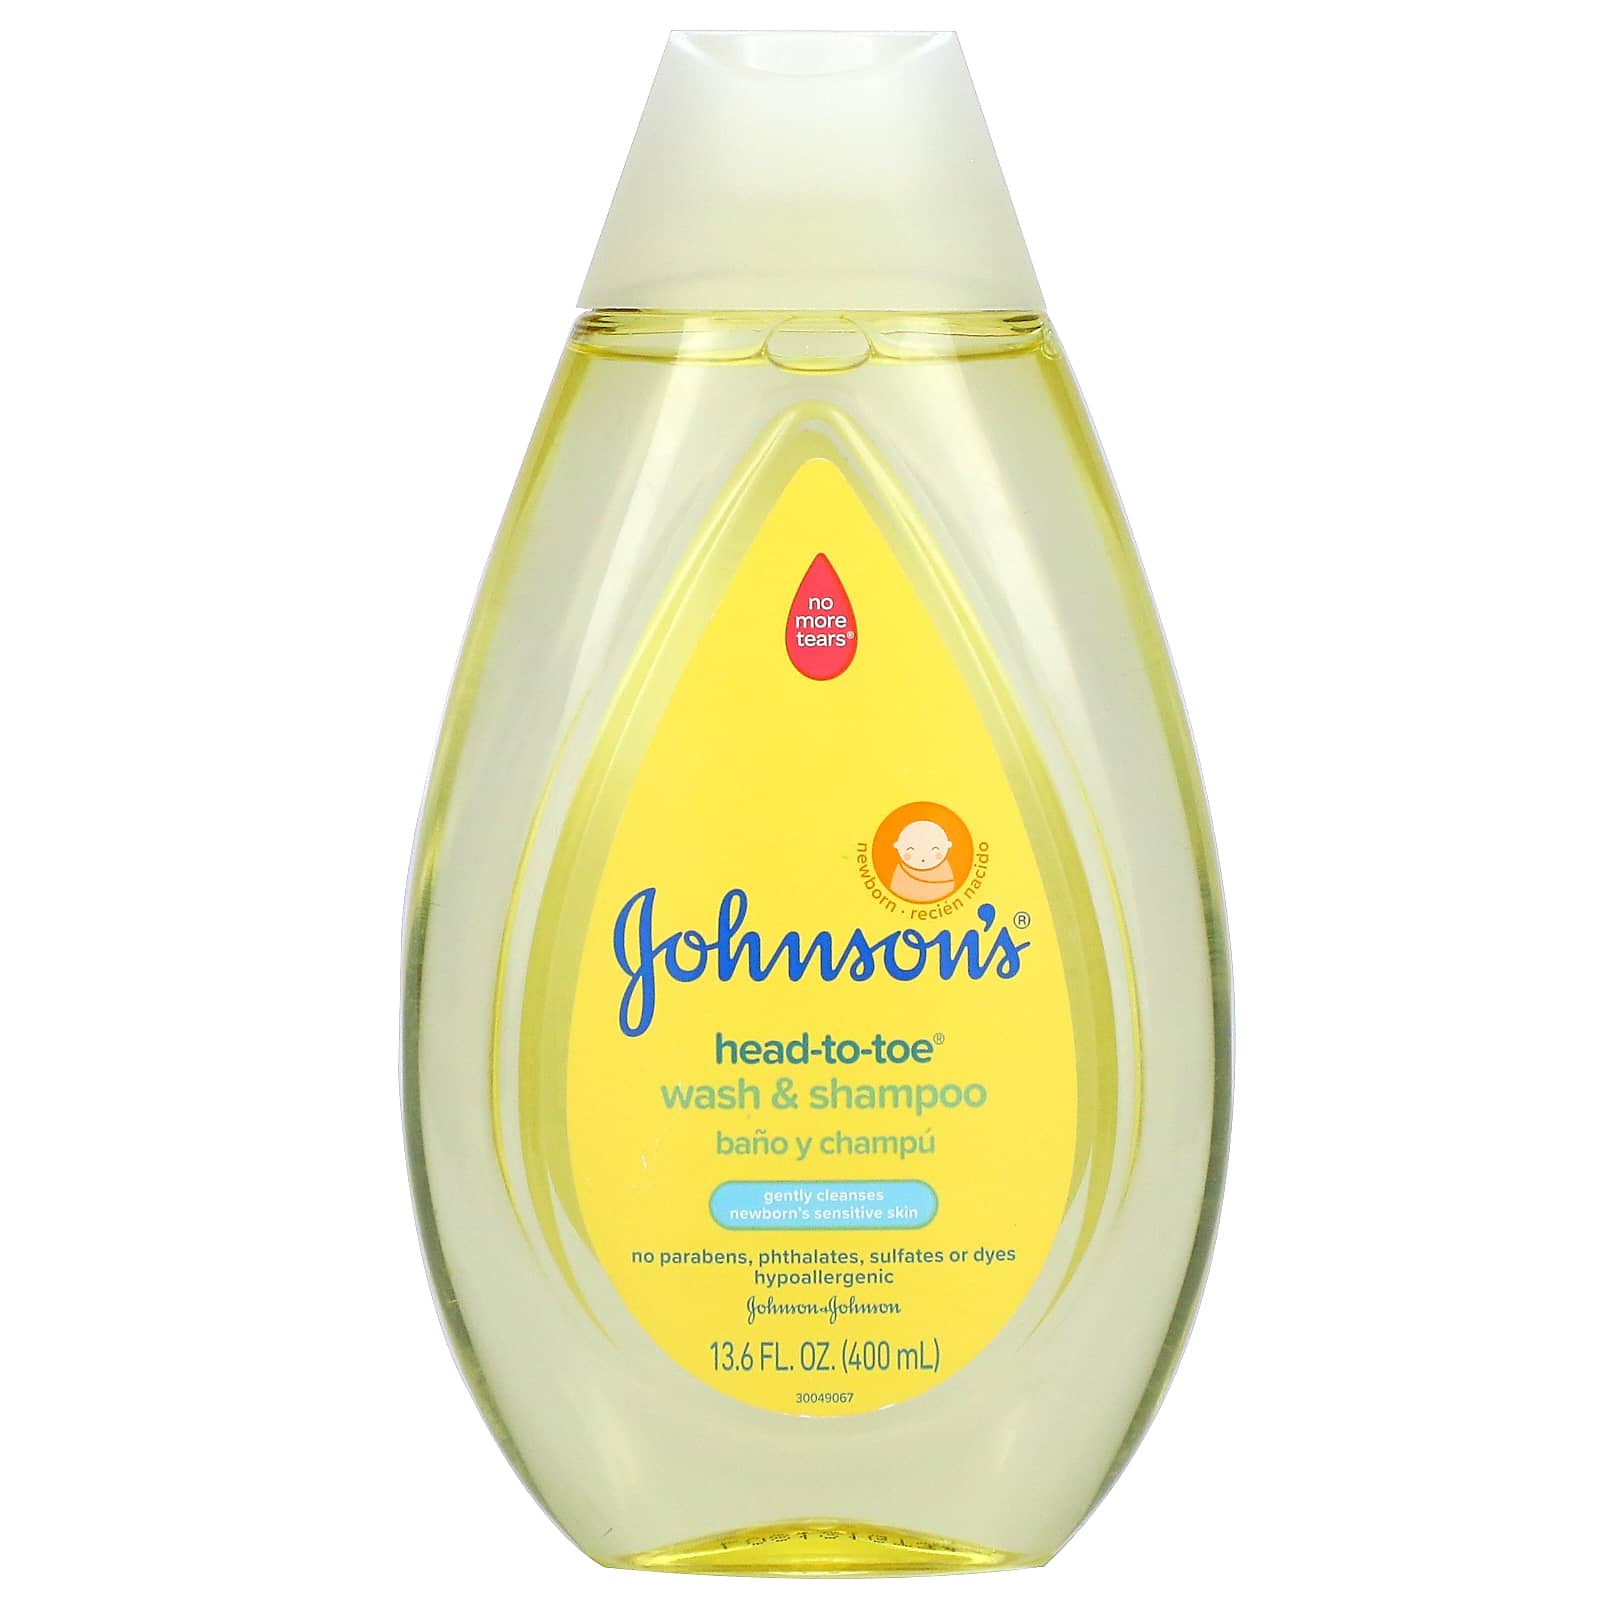 Comprar Jabón Líquido para bebé Johnson's De la Cabeza a los Pies -200 ml